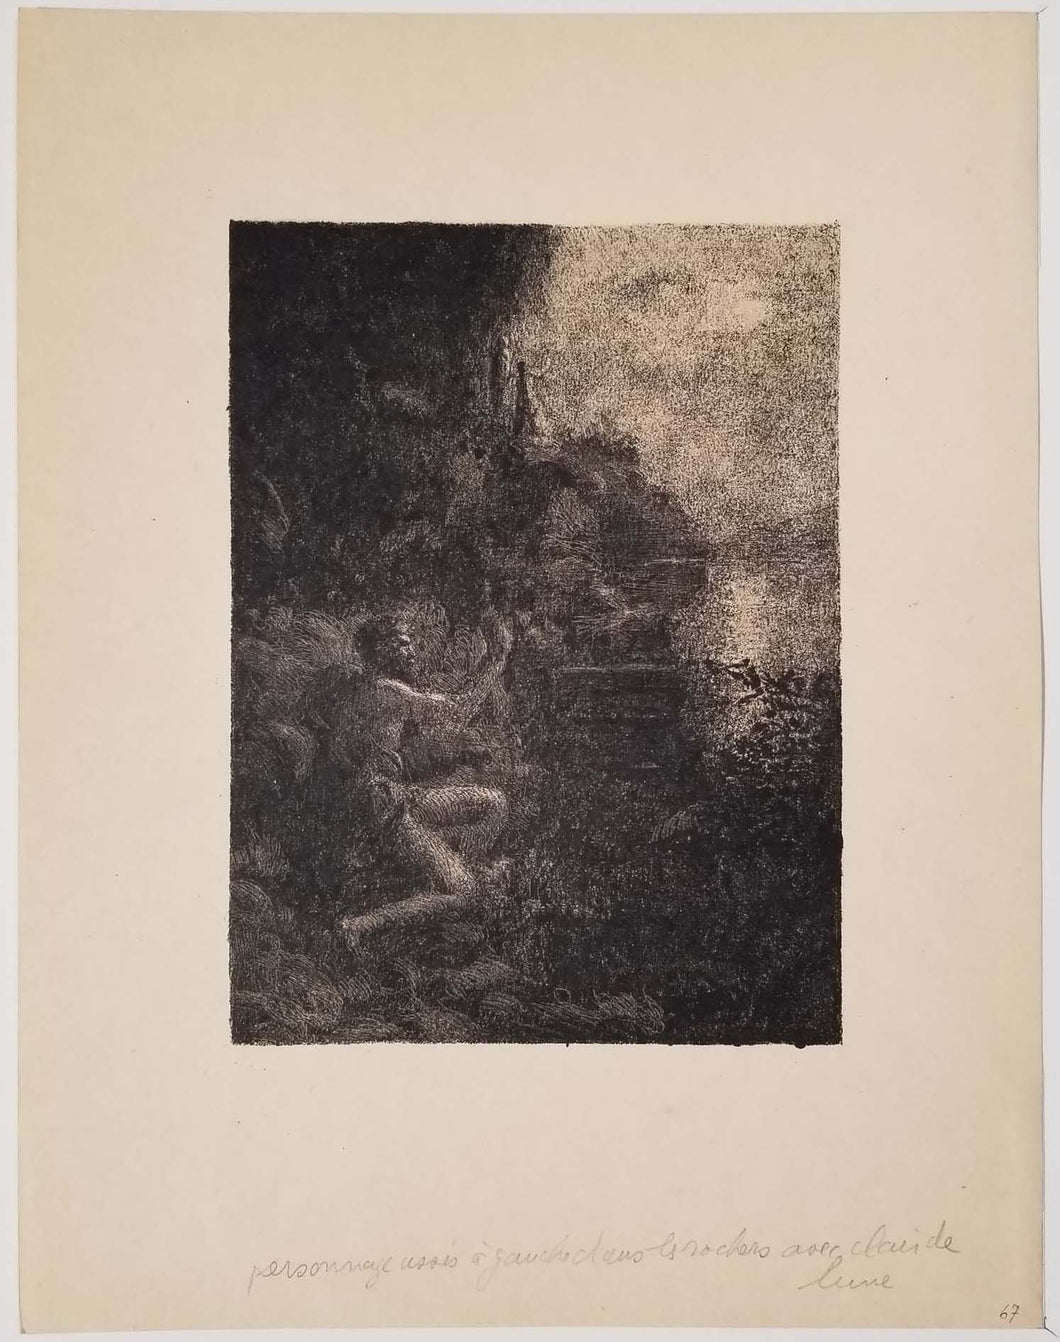 Dieu marin sur une rive rocheuse au clair de lune. 1926.